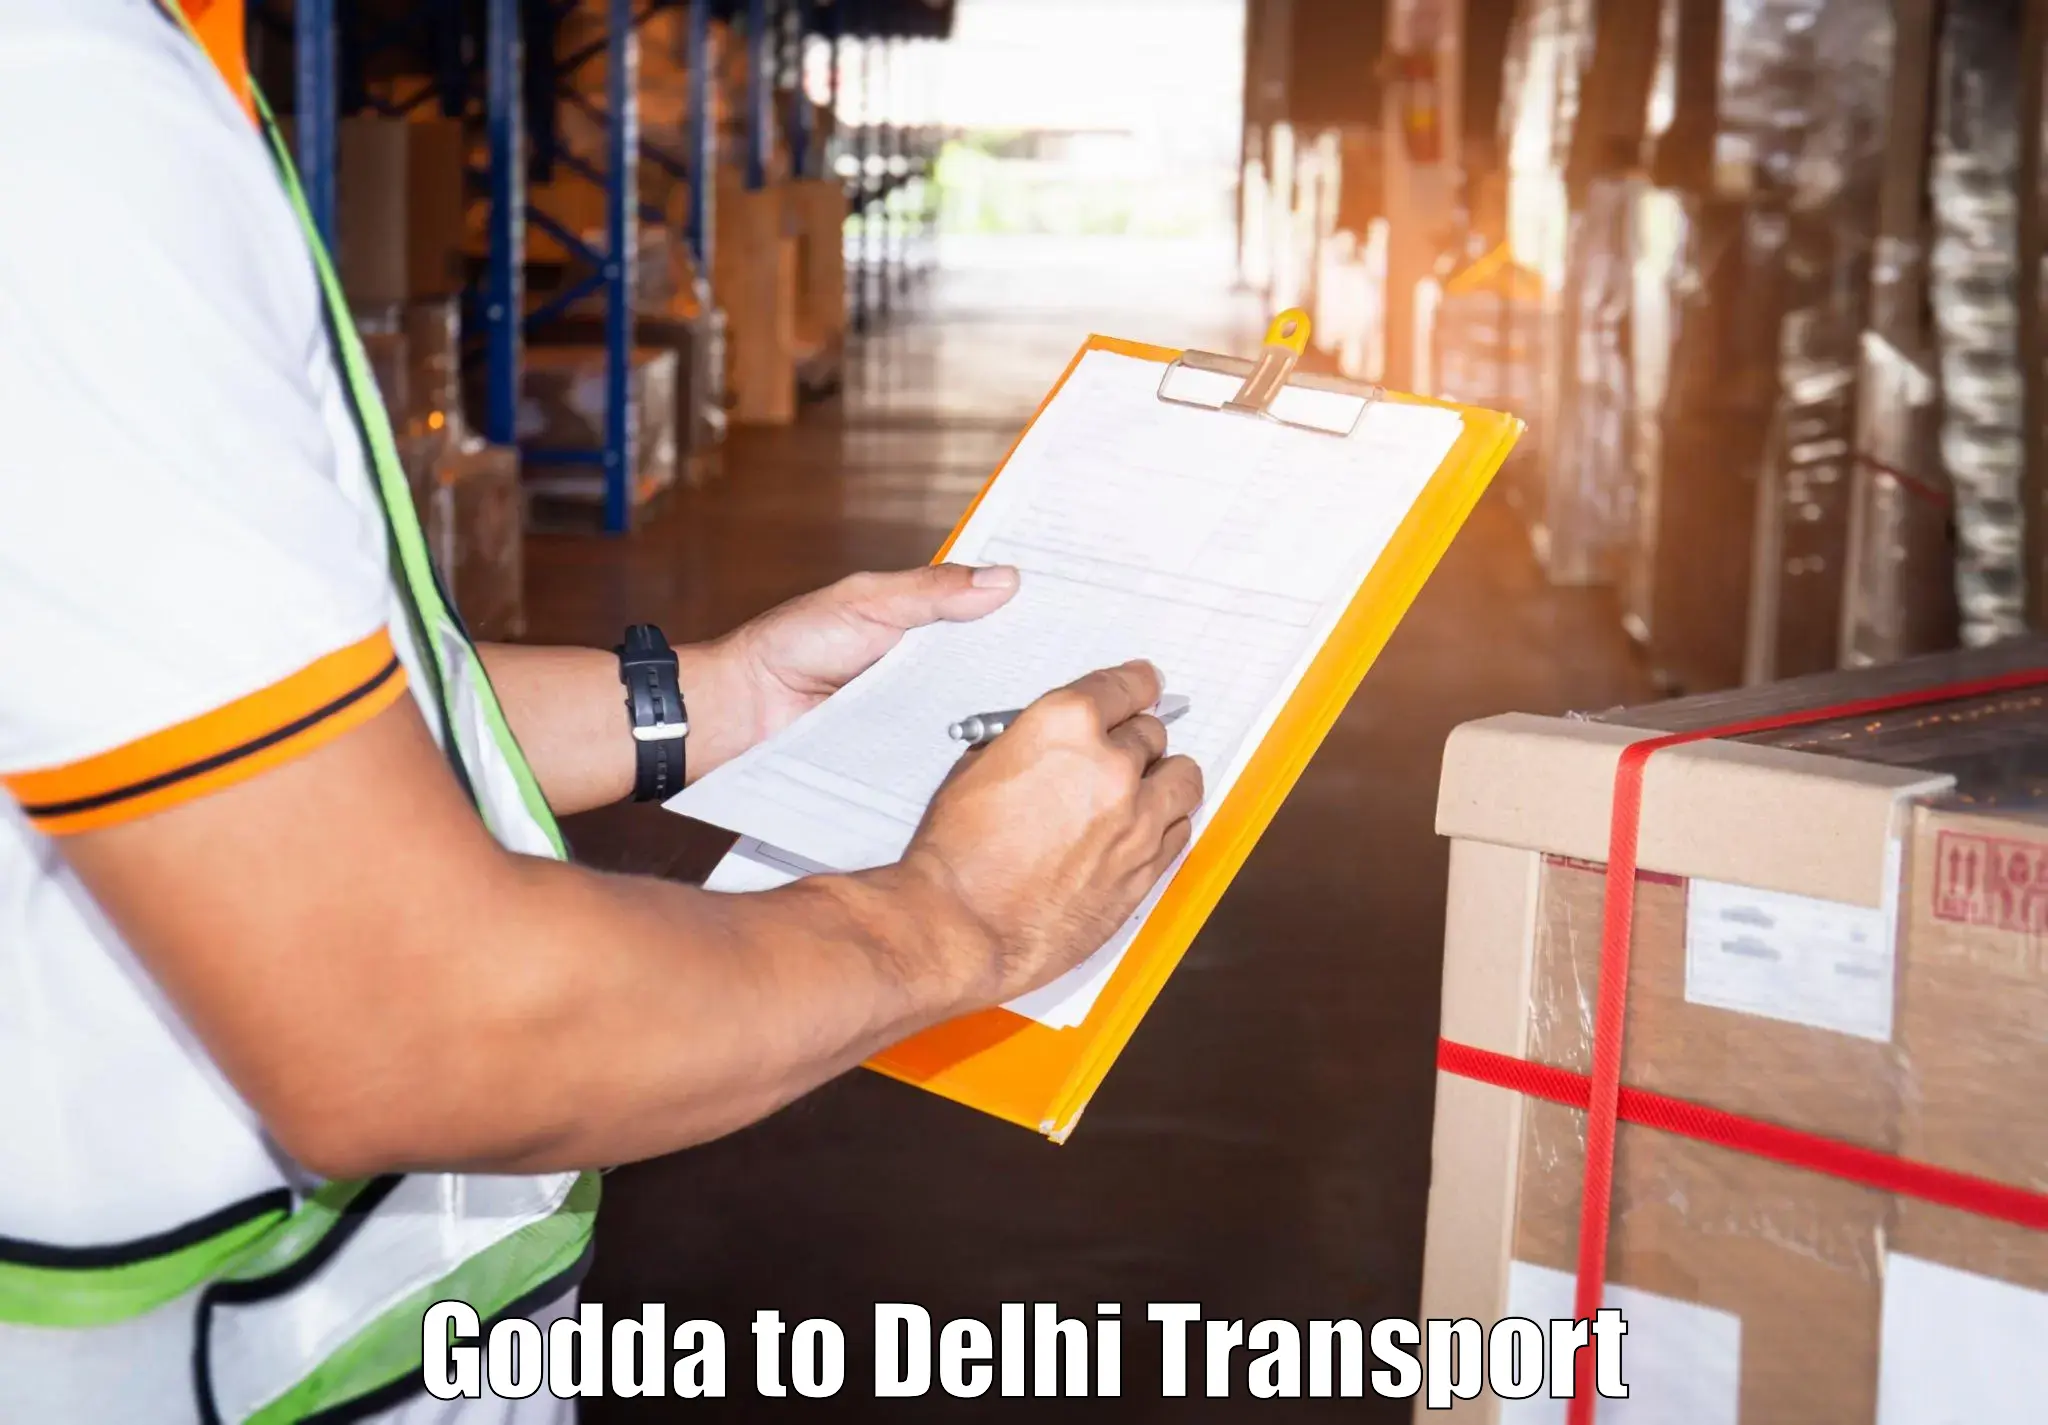 Parcel transport services Godda to NCR